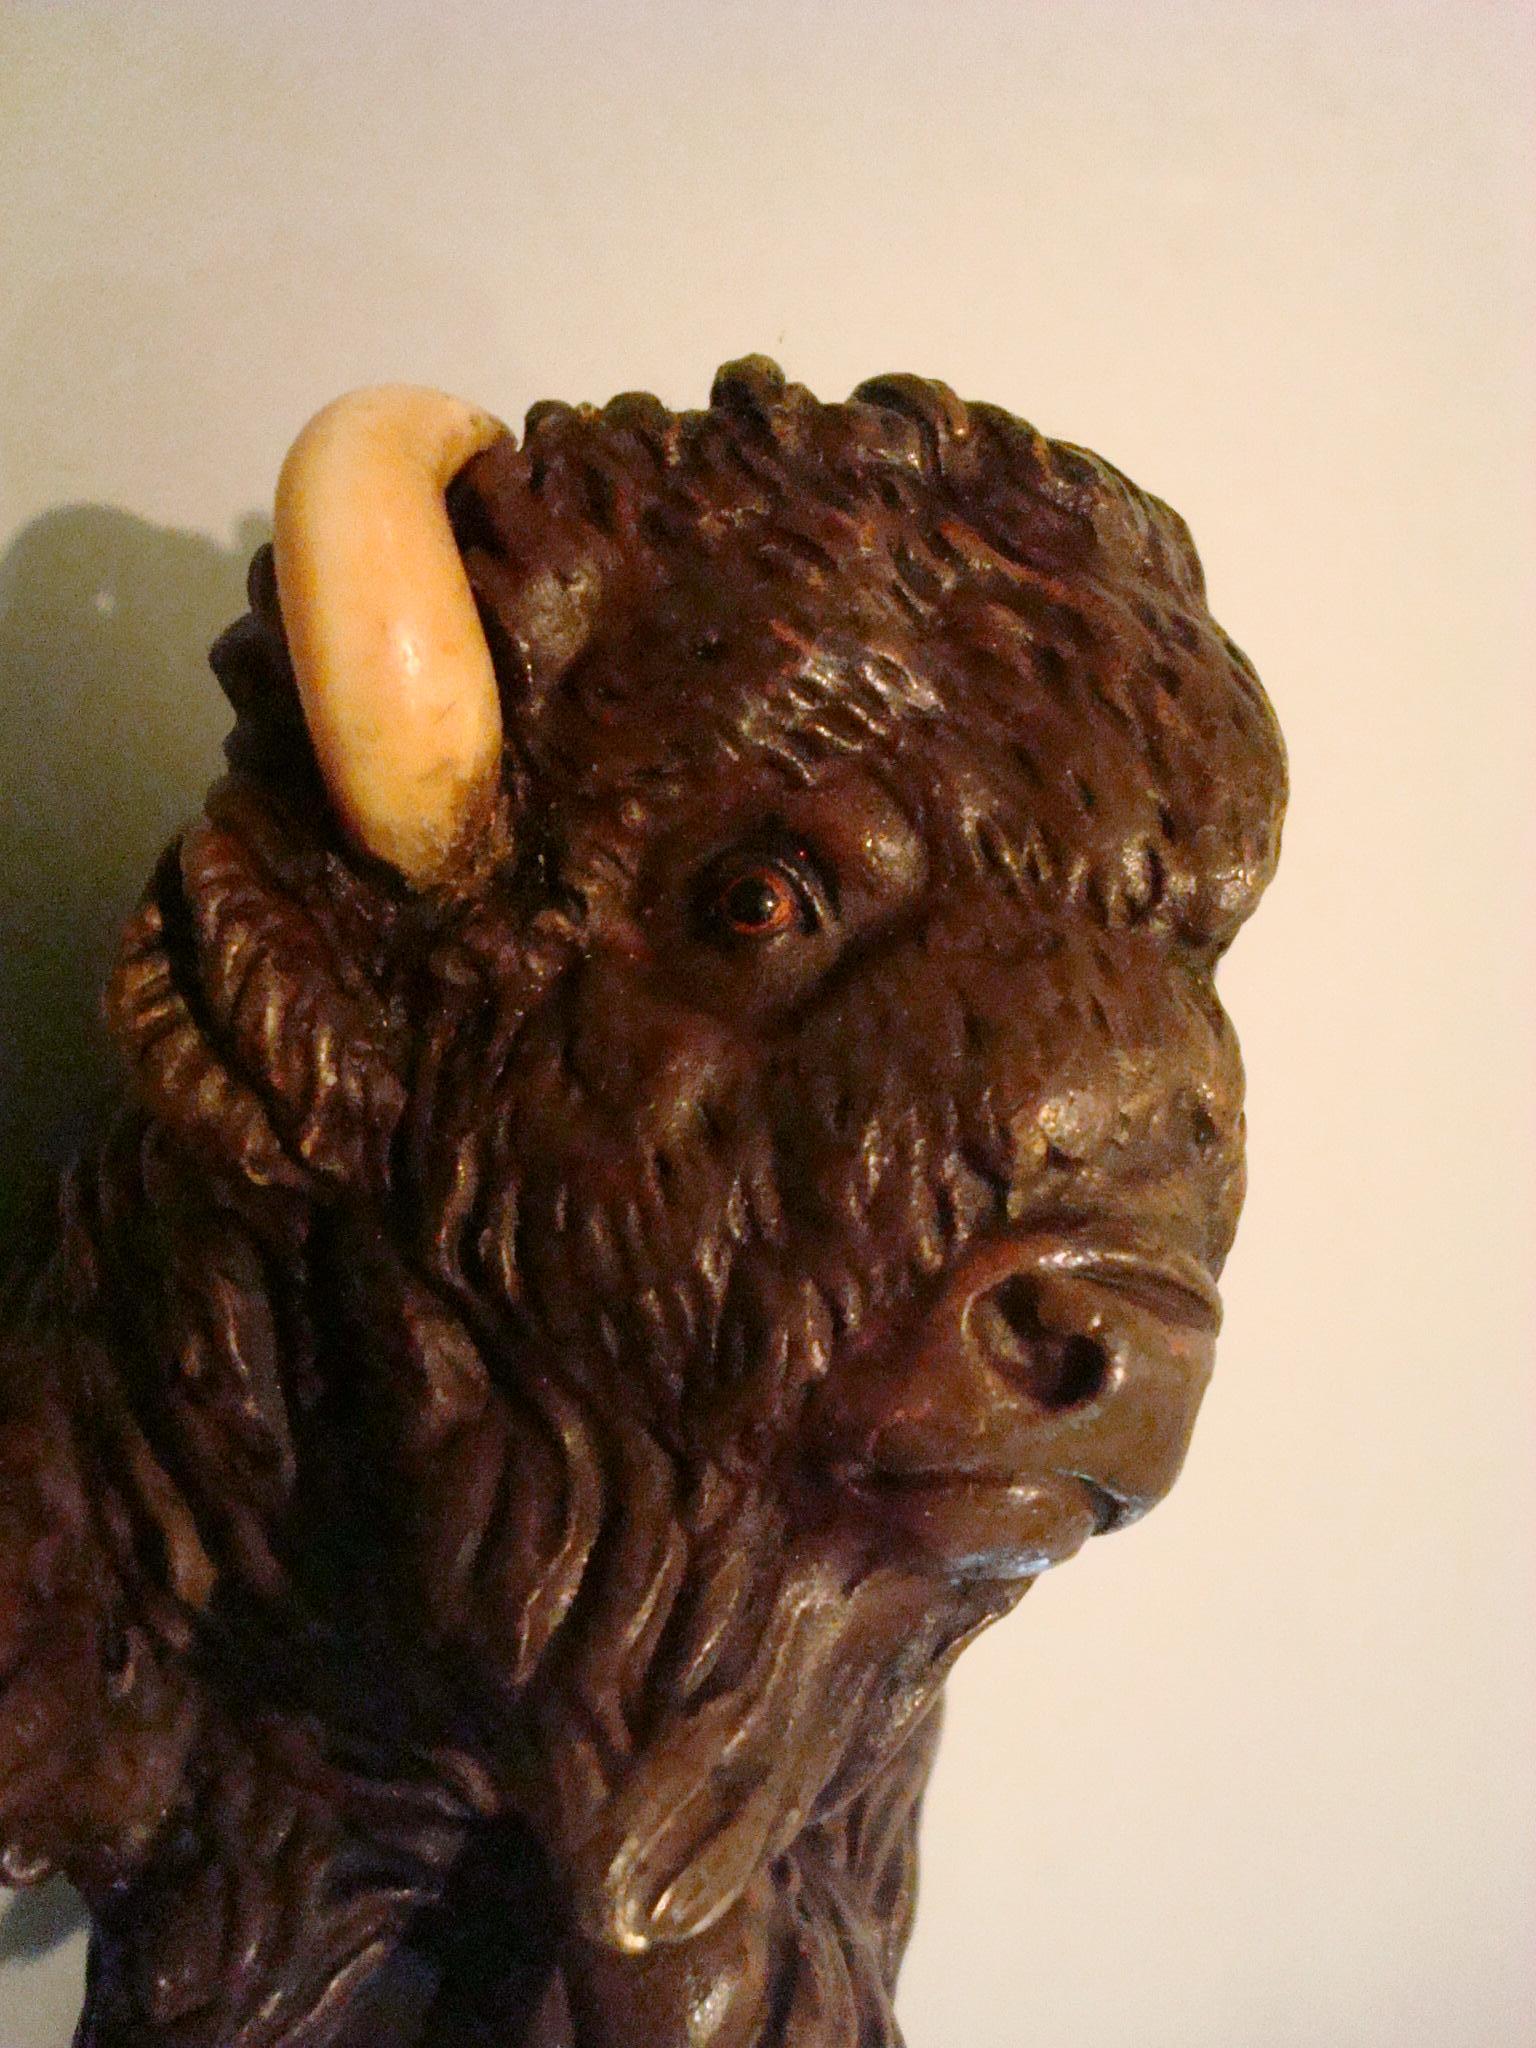 Sculpture de bonne qualité de la fin du 19e siècle représentant un bison, avec de fins détails finis à la main, rare en raison de sa grande taille. Sans marque, dans le style de Franz BERGMAN (1898-1963).